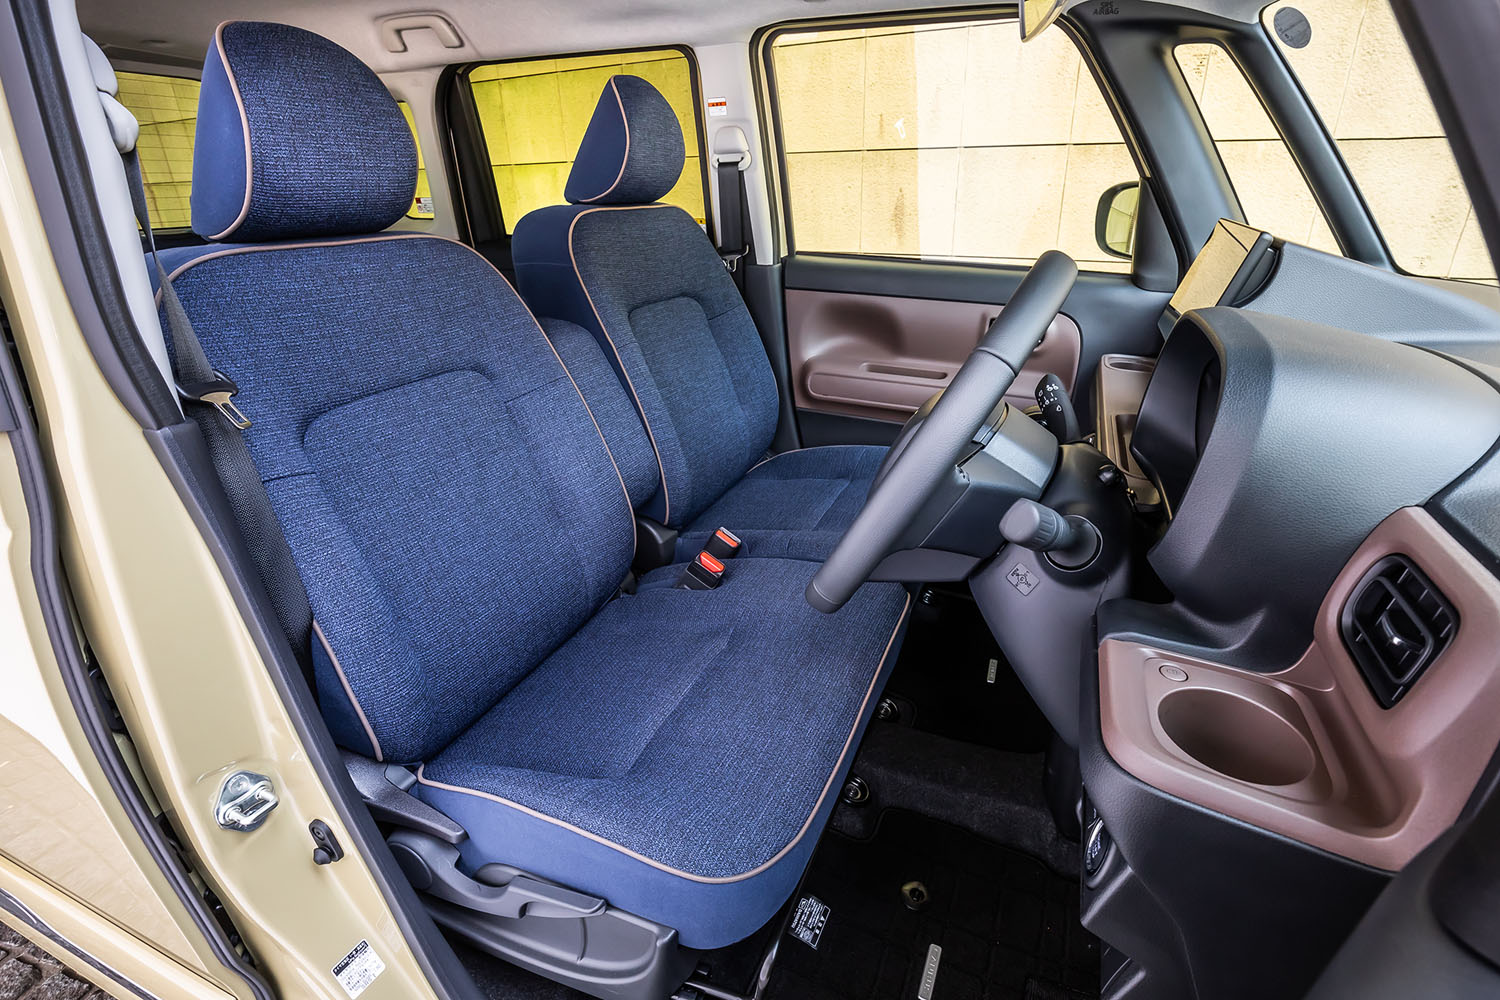 「セオリー」のシート表皮は全グレード共通で、パイピング付きのネイビーファブリックが採用される。「Gターボ」および「G」グレードのフロントシートは、標準でヒーター機能を内蔵している。